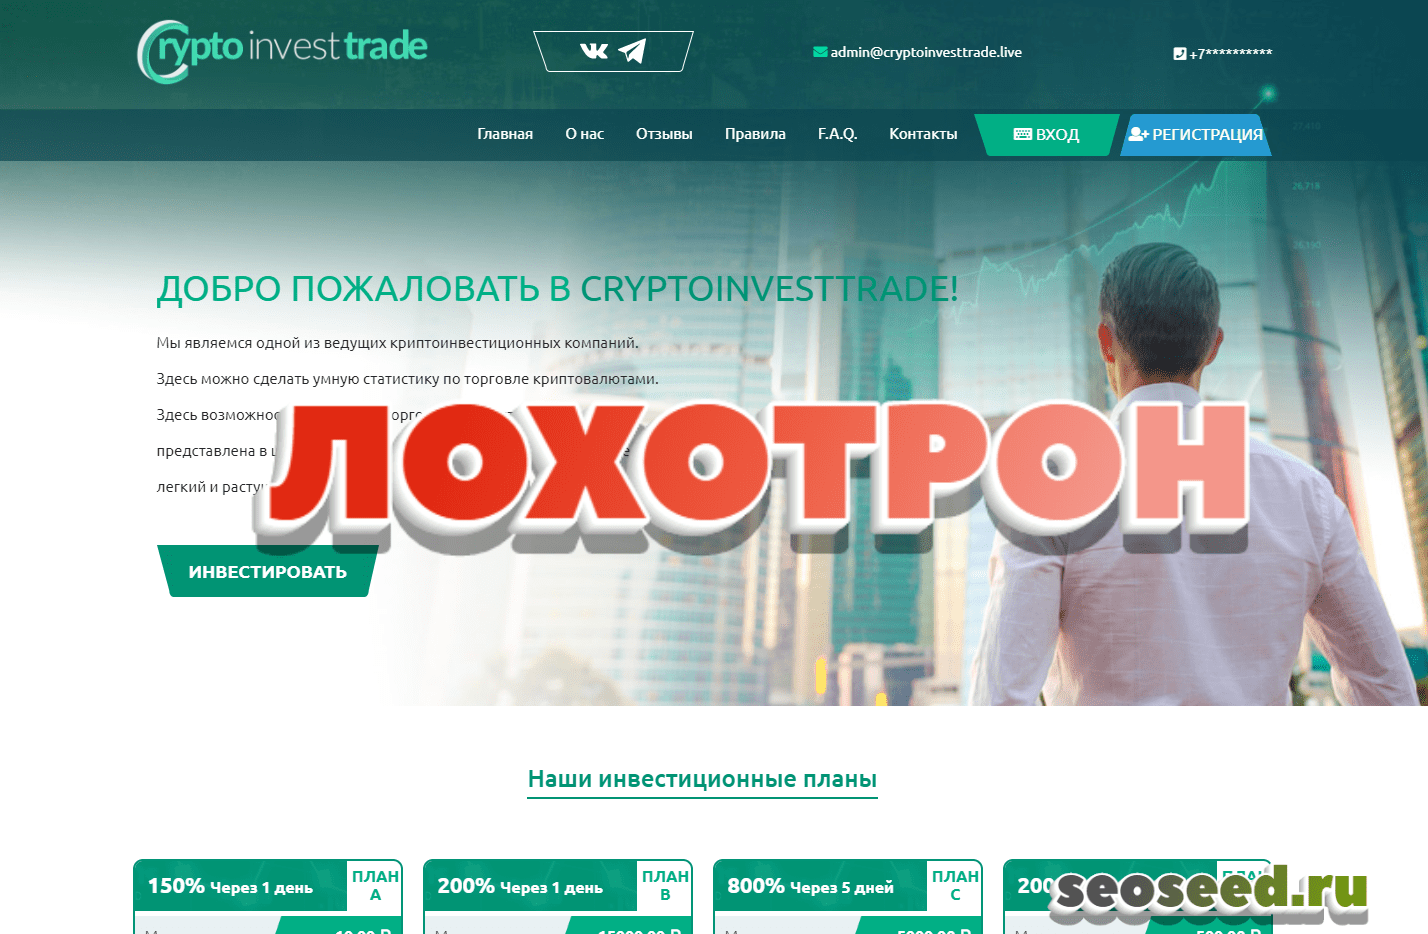 Crypto Invest Trade - инвестиционный проект. Отзывы о cryptoinvesttrade.live